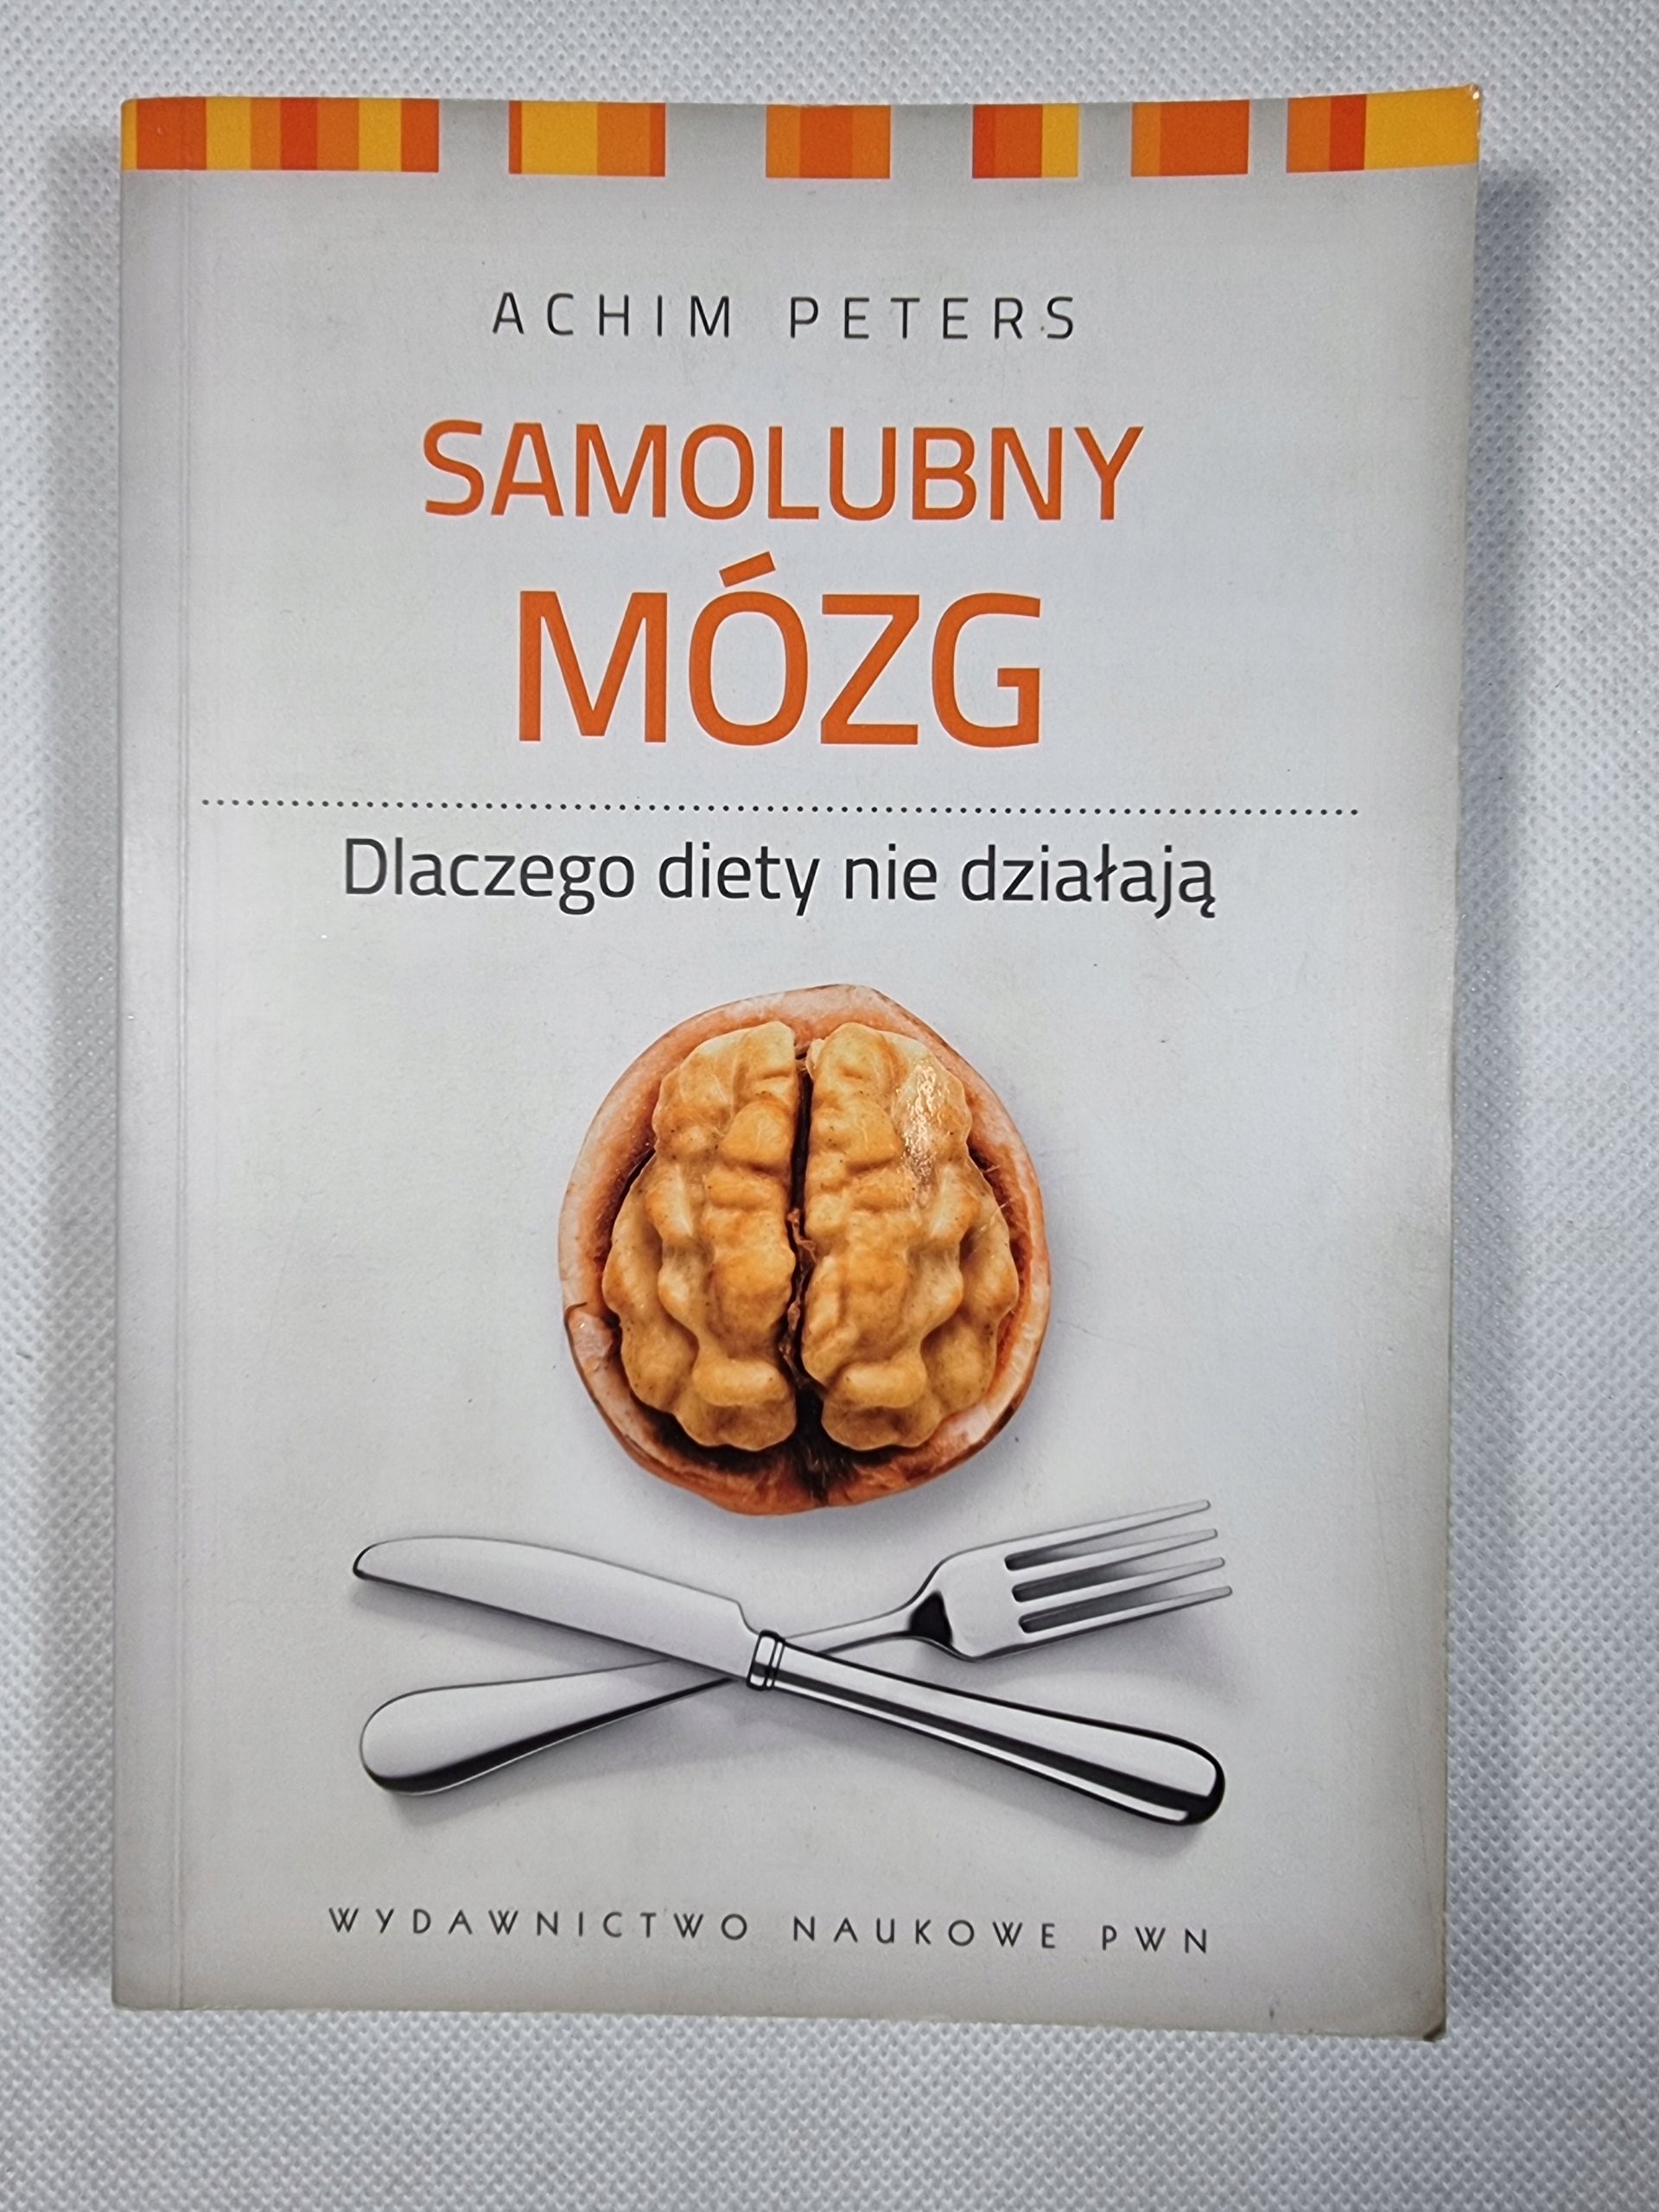 Samolubny Mózg - dlaczego diety nie działają / Achim Peters